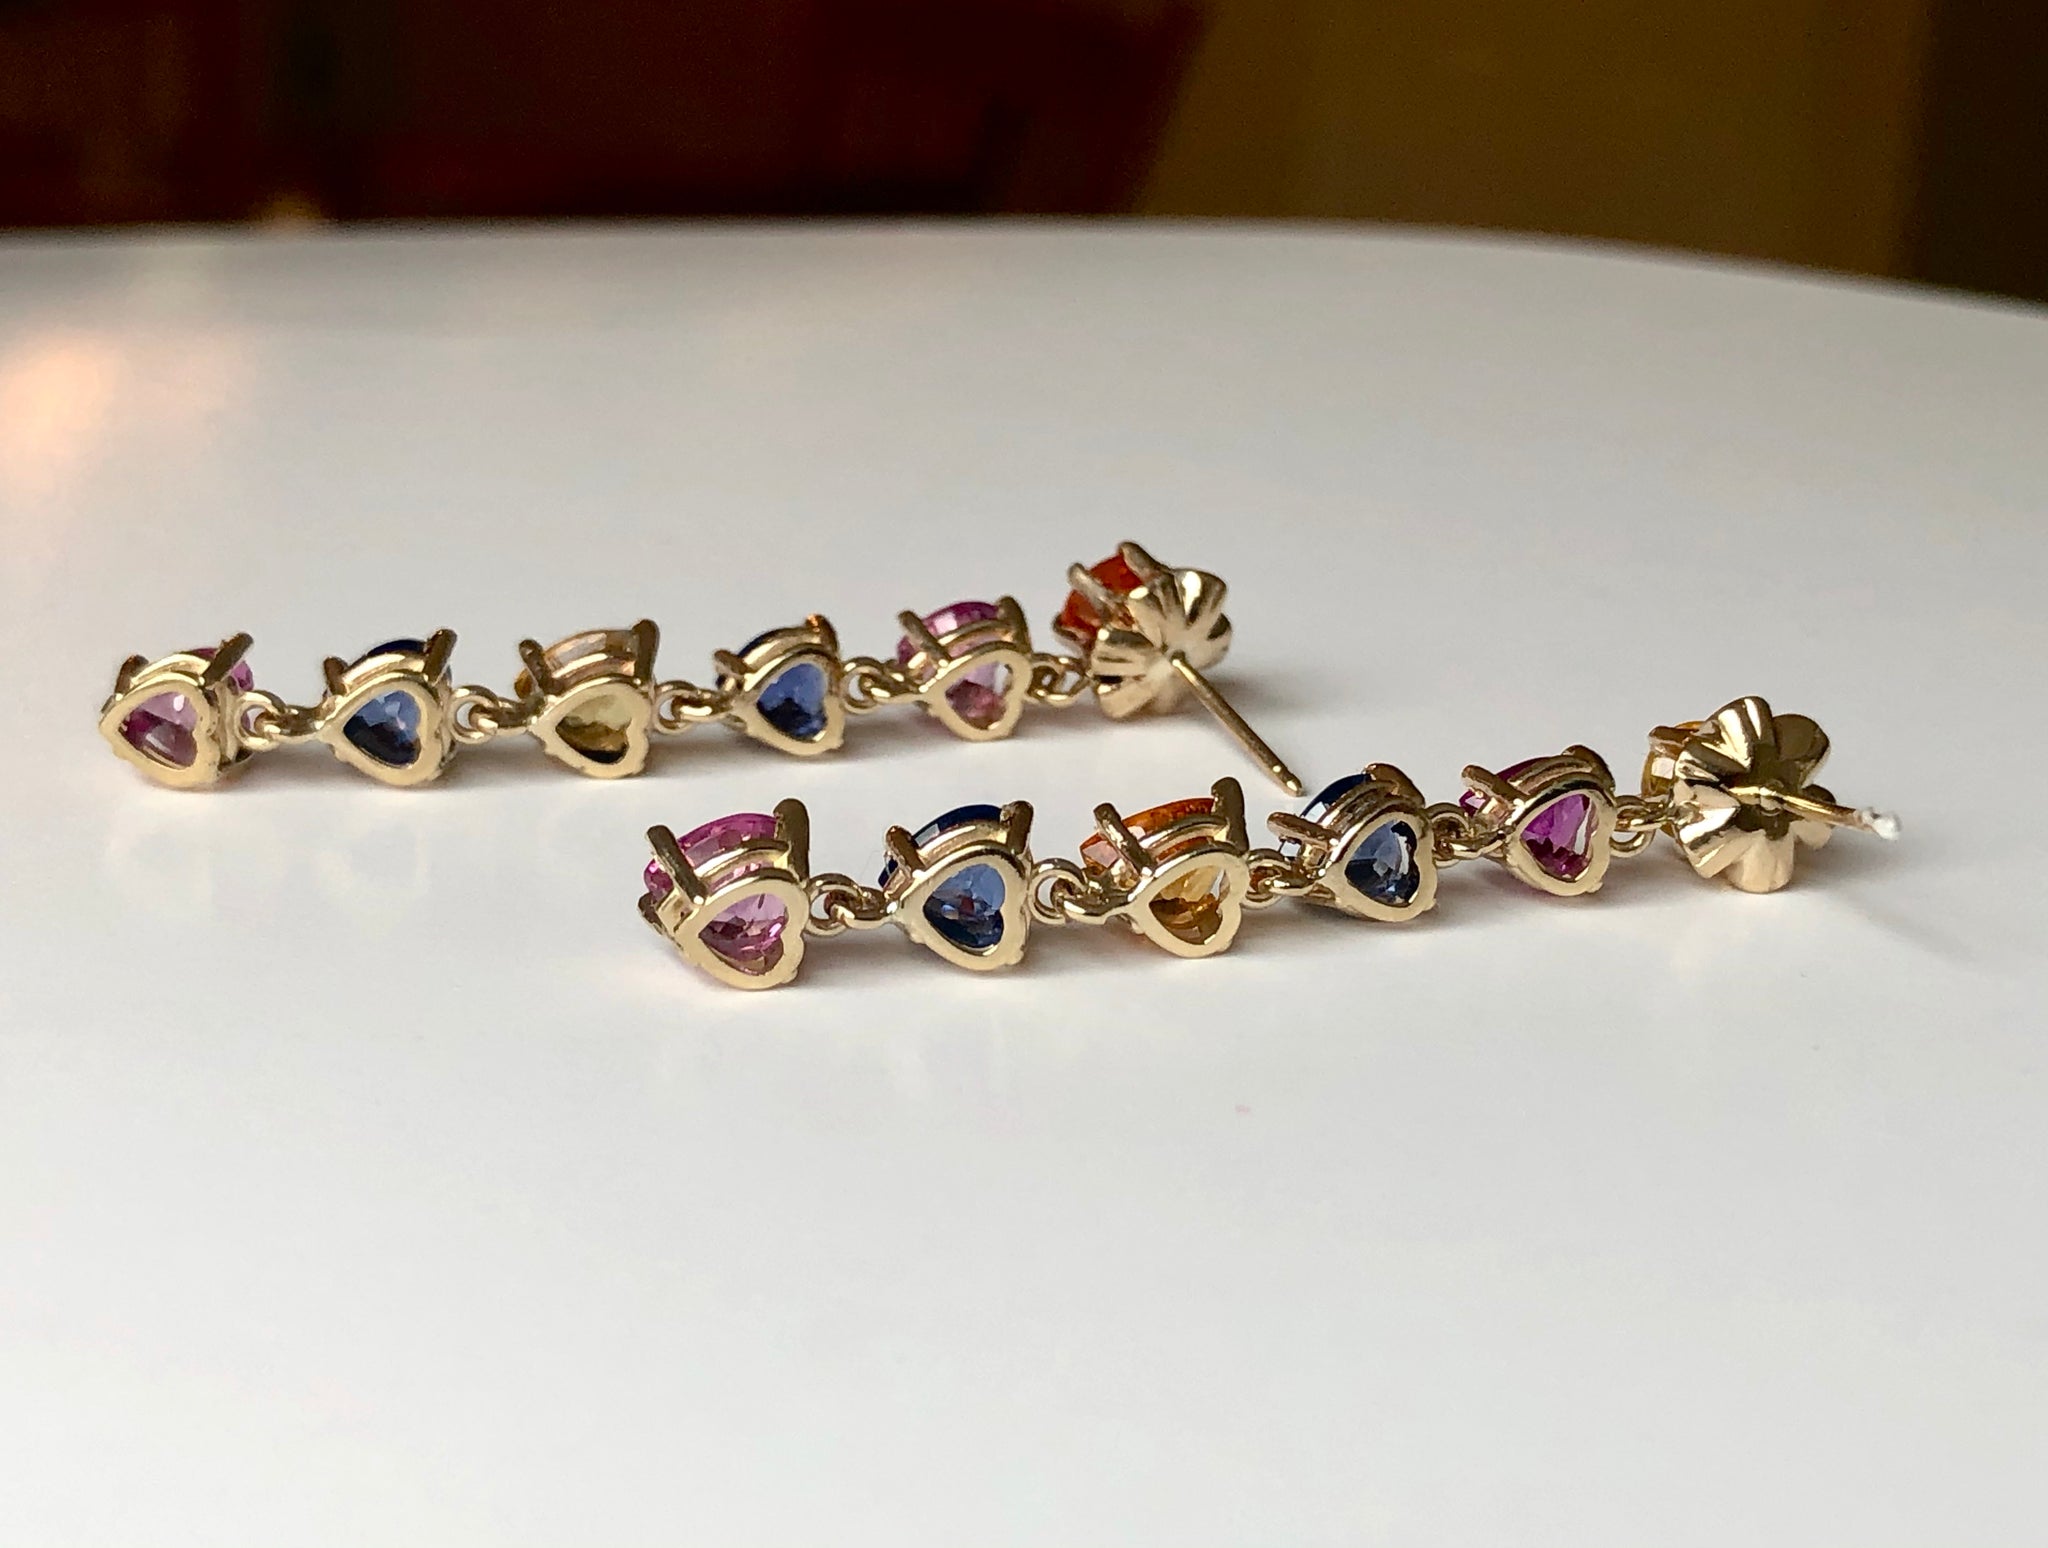 Dangle Sapphire Multi-Color Heart Cut Drop Earrings Gold